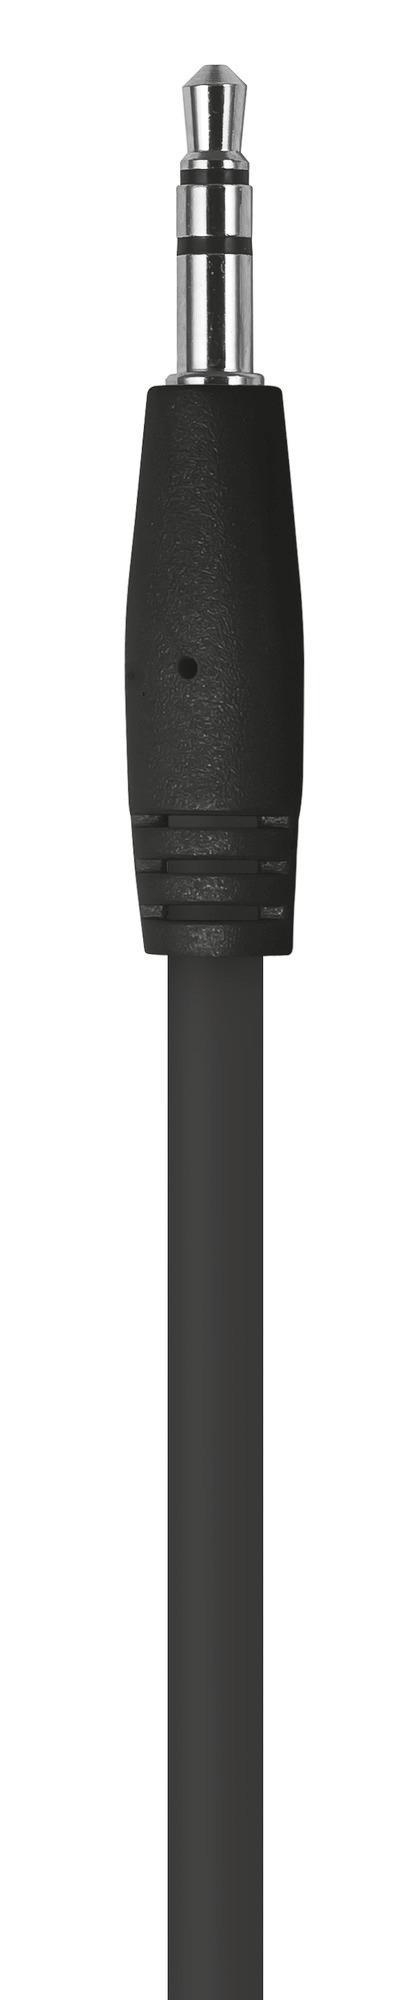 TRUST GXT 212 Mikrofon - für Schwarz USB Mico PC